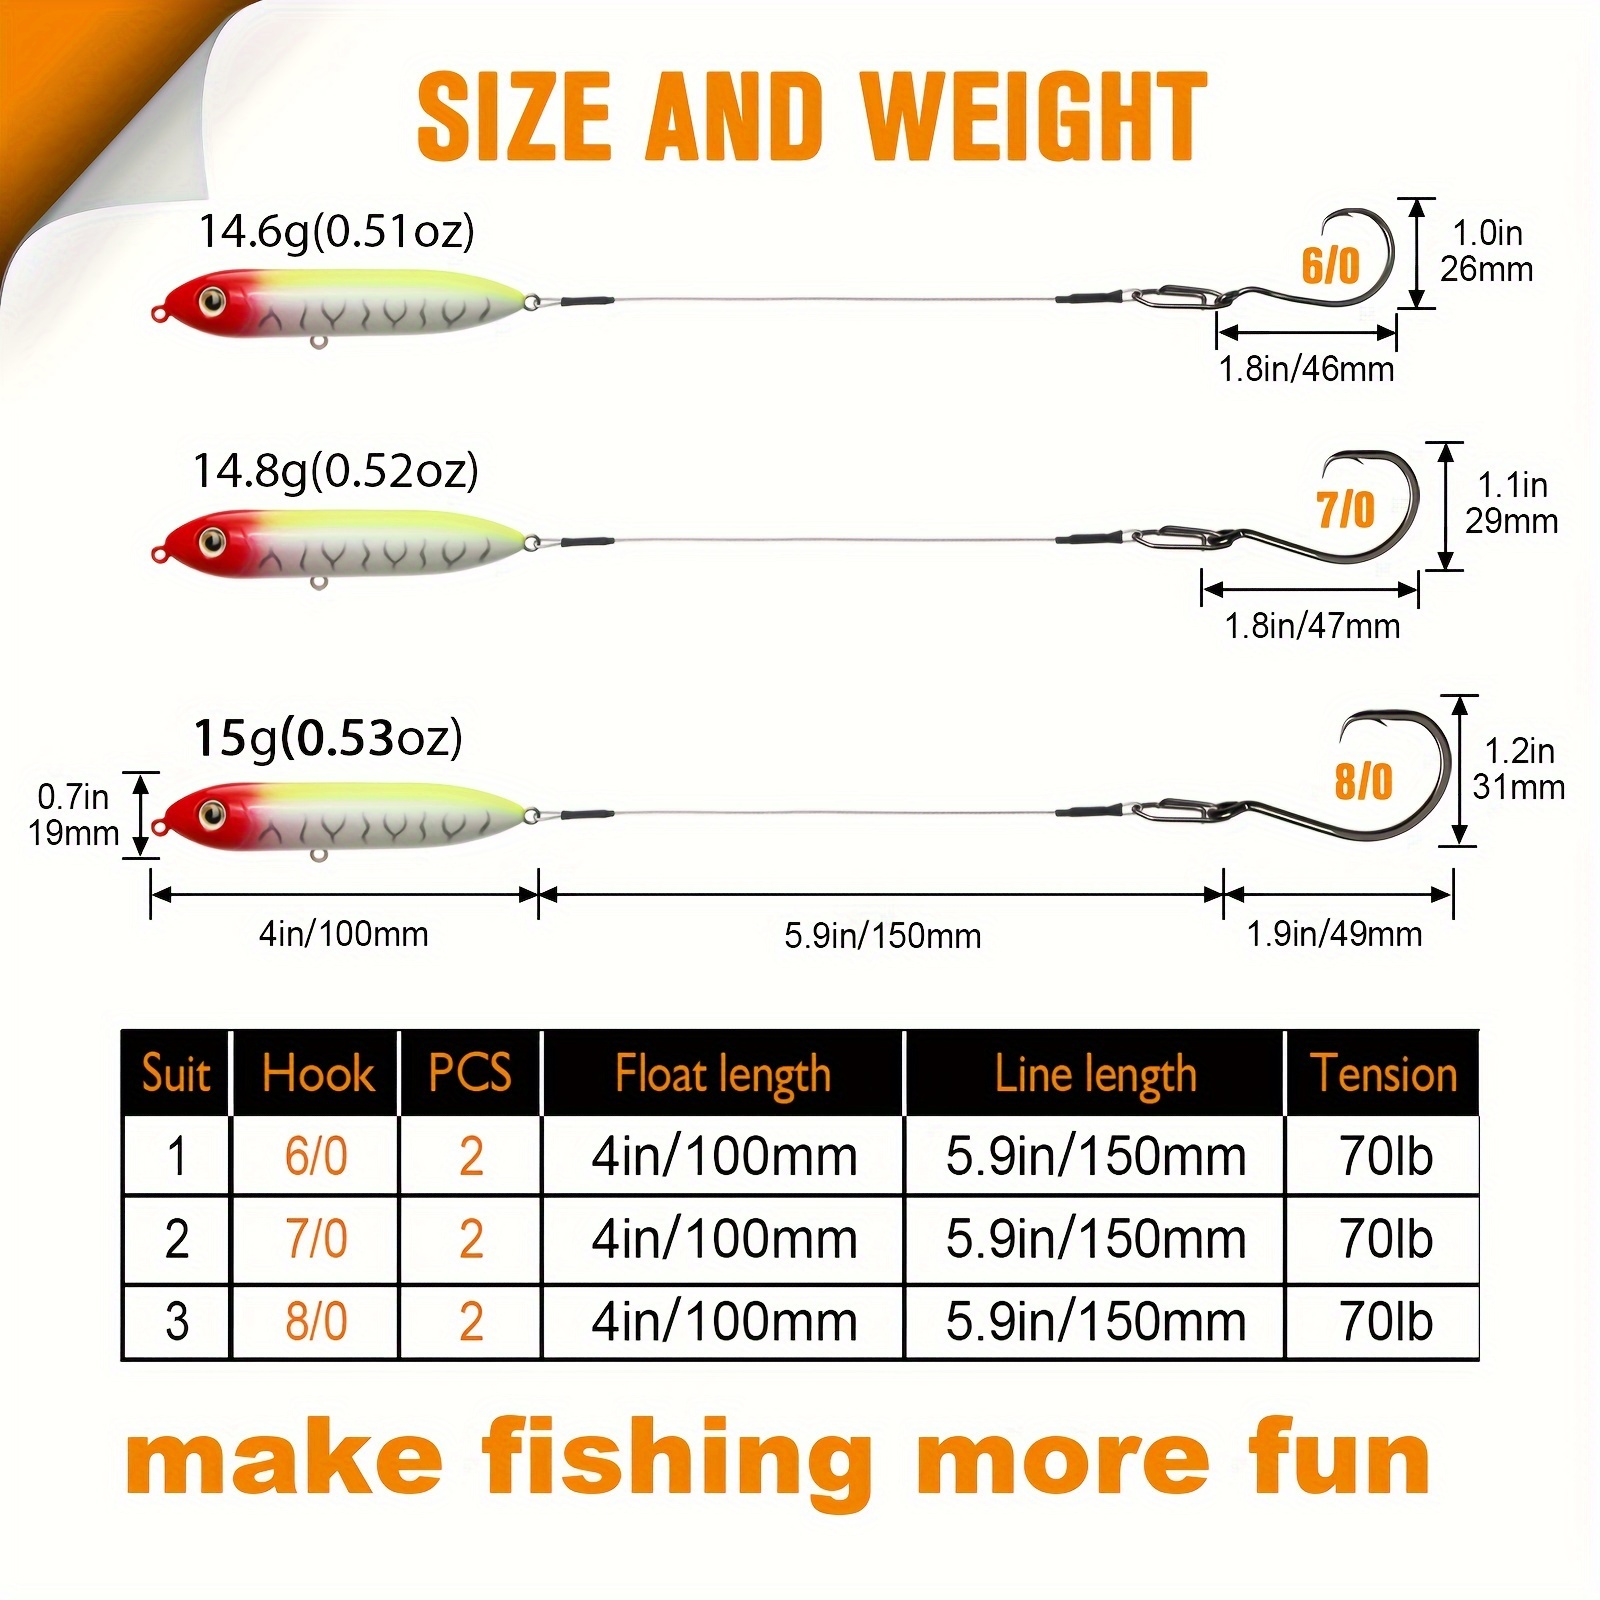 What hook size should I use for catfish? : r/catfishing